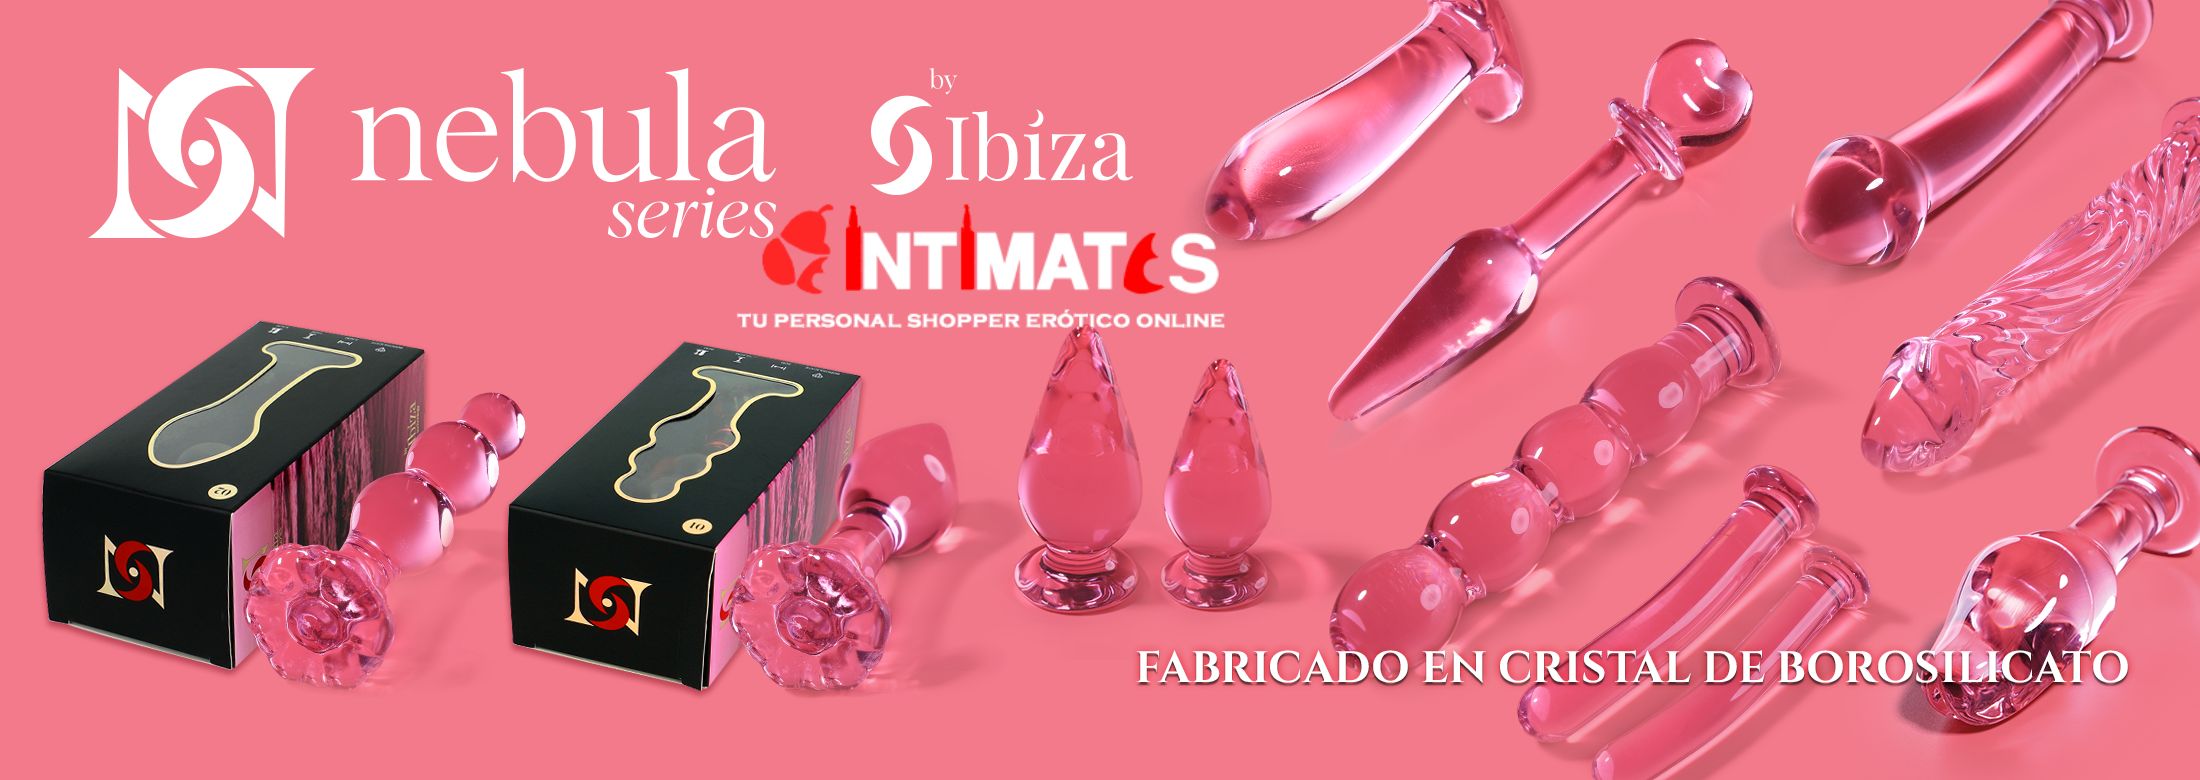 NEBULA SERIES BY IBIZA es una marca de productos eróticos que se ha ganado una reputación por su compromiso con la calidad, el diseño y la satisfacción del cliente, que puedes adquirir en intimates.es "Tu Personal Shopper Erótico"